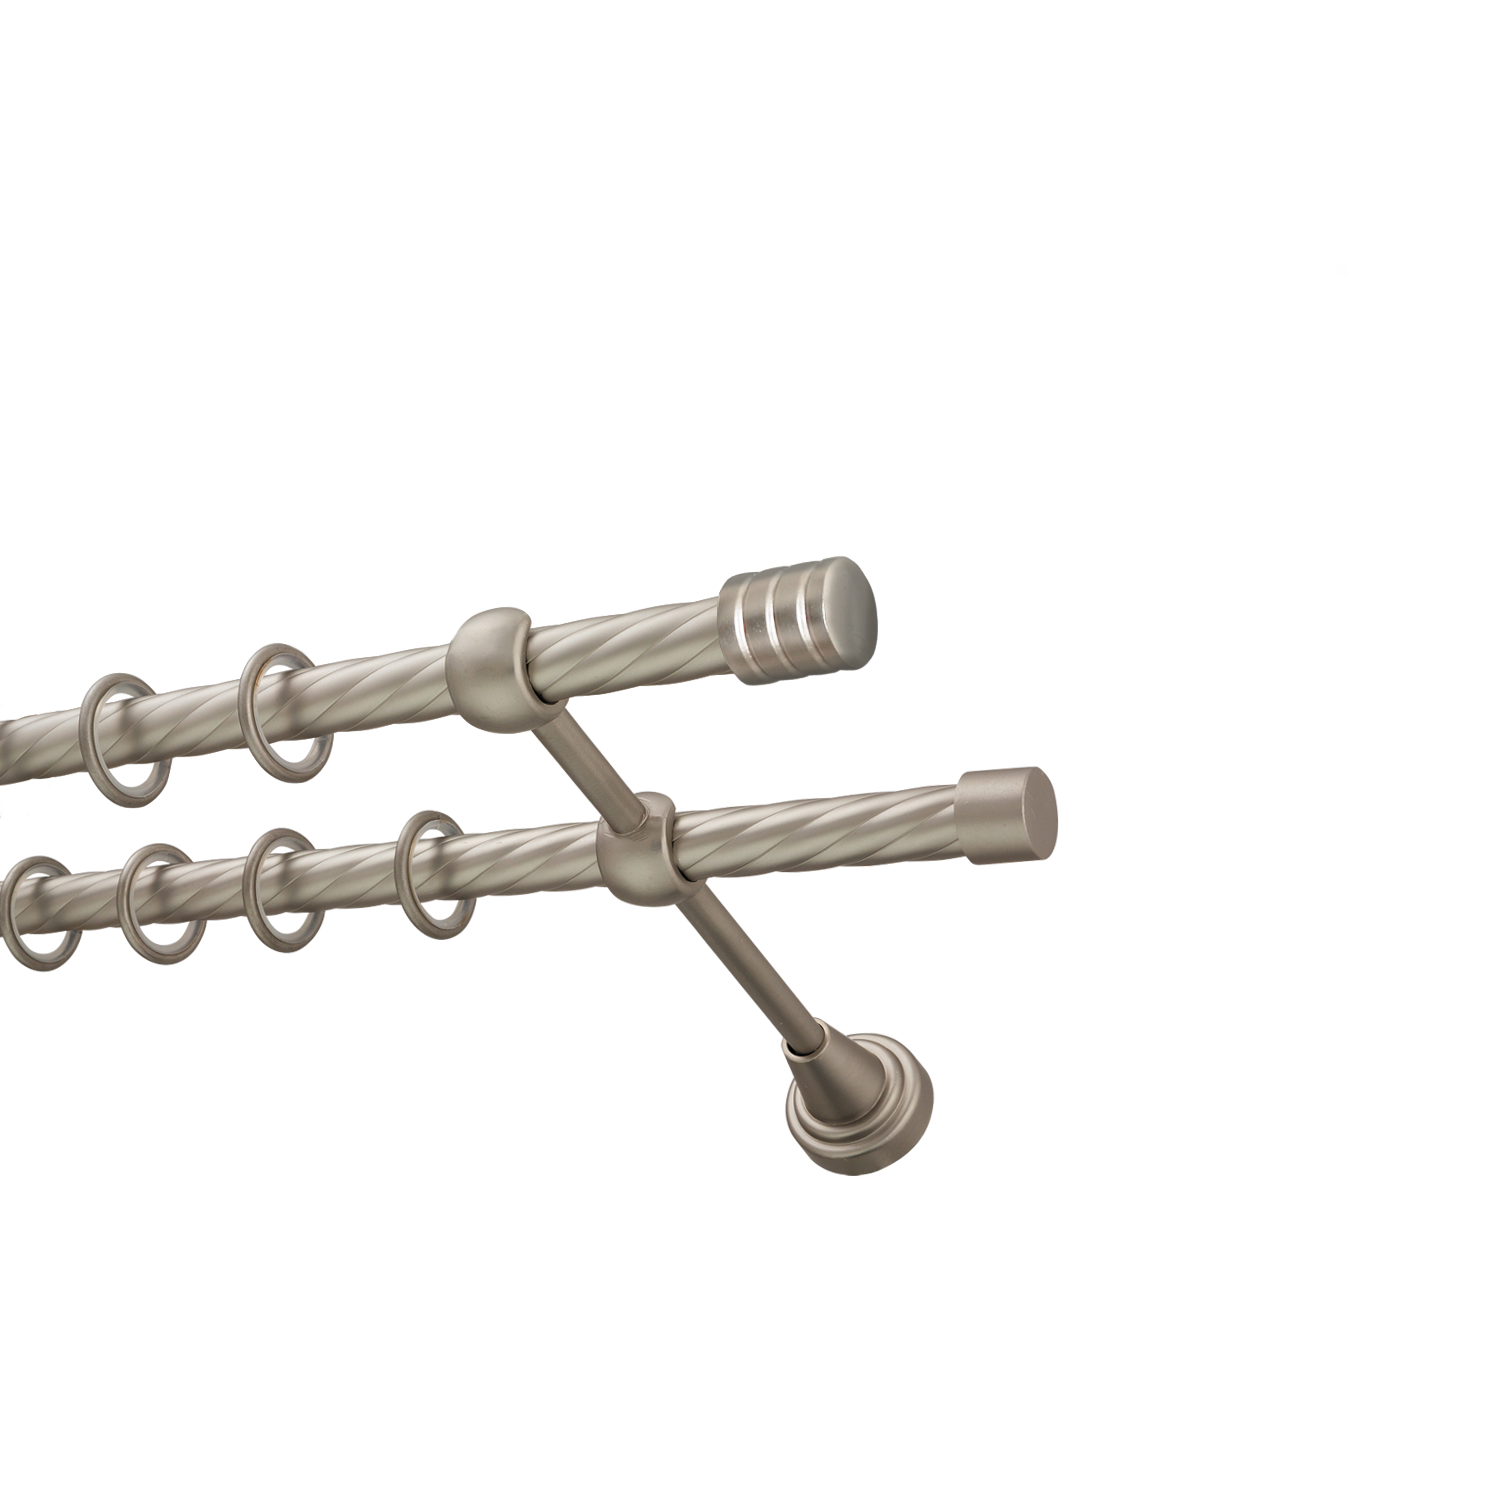 Металлический карниз для штор Подиум, двухрядный 16/16 мм, сталь, витая штанга, длина 180 см - фото Wikidecor.ru